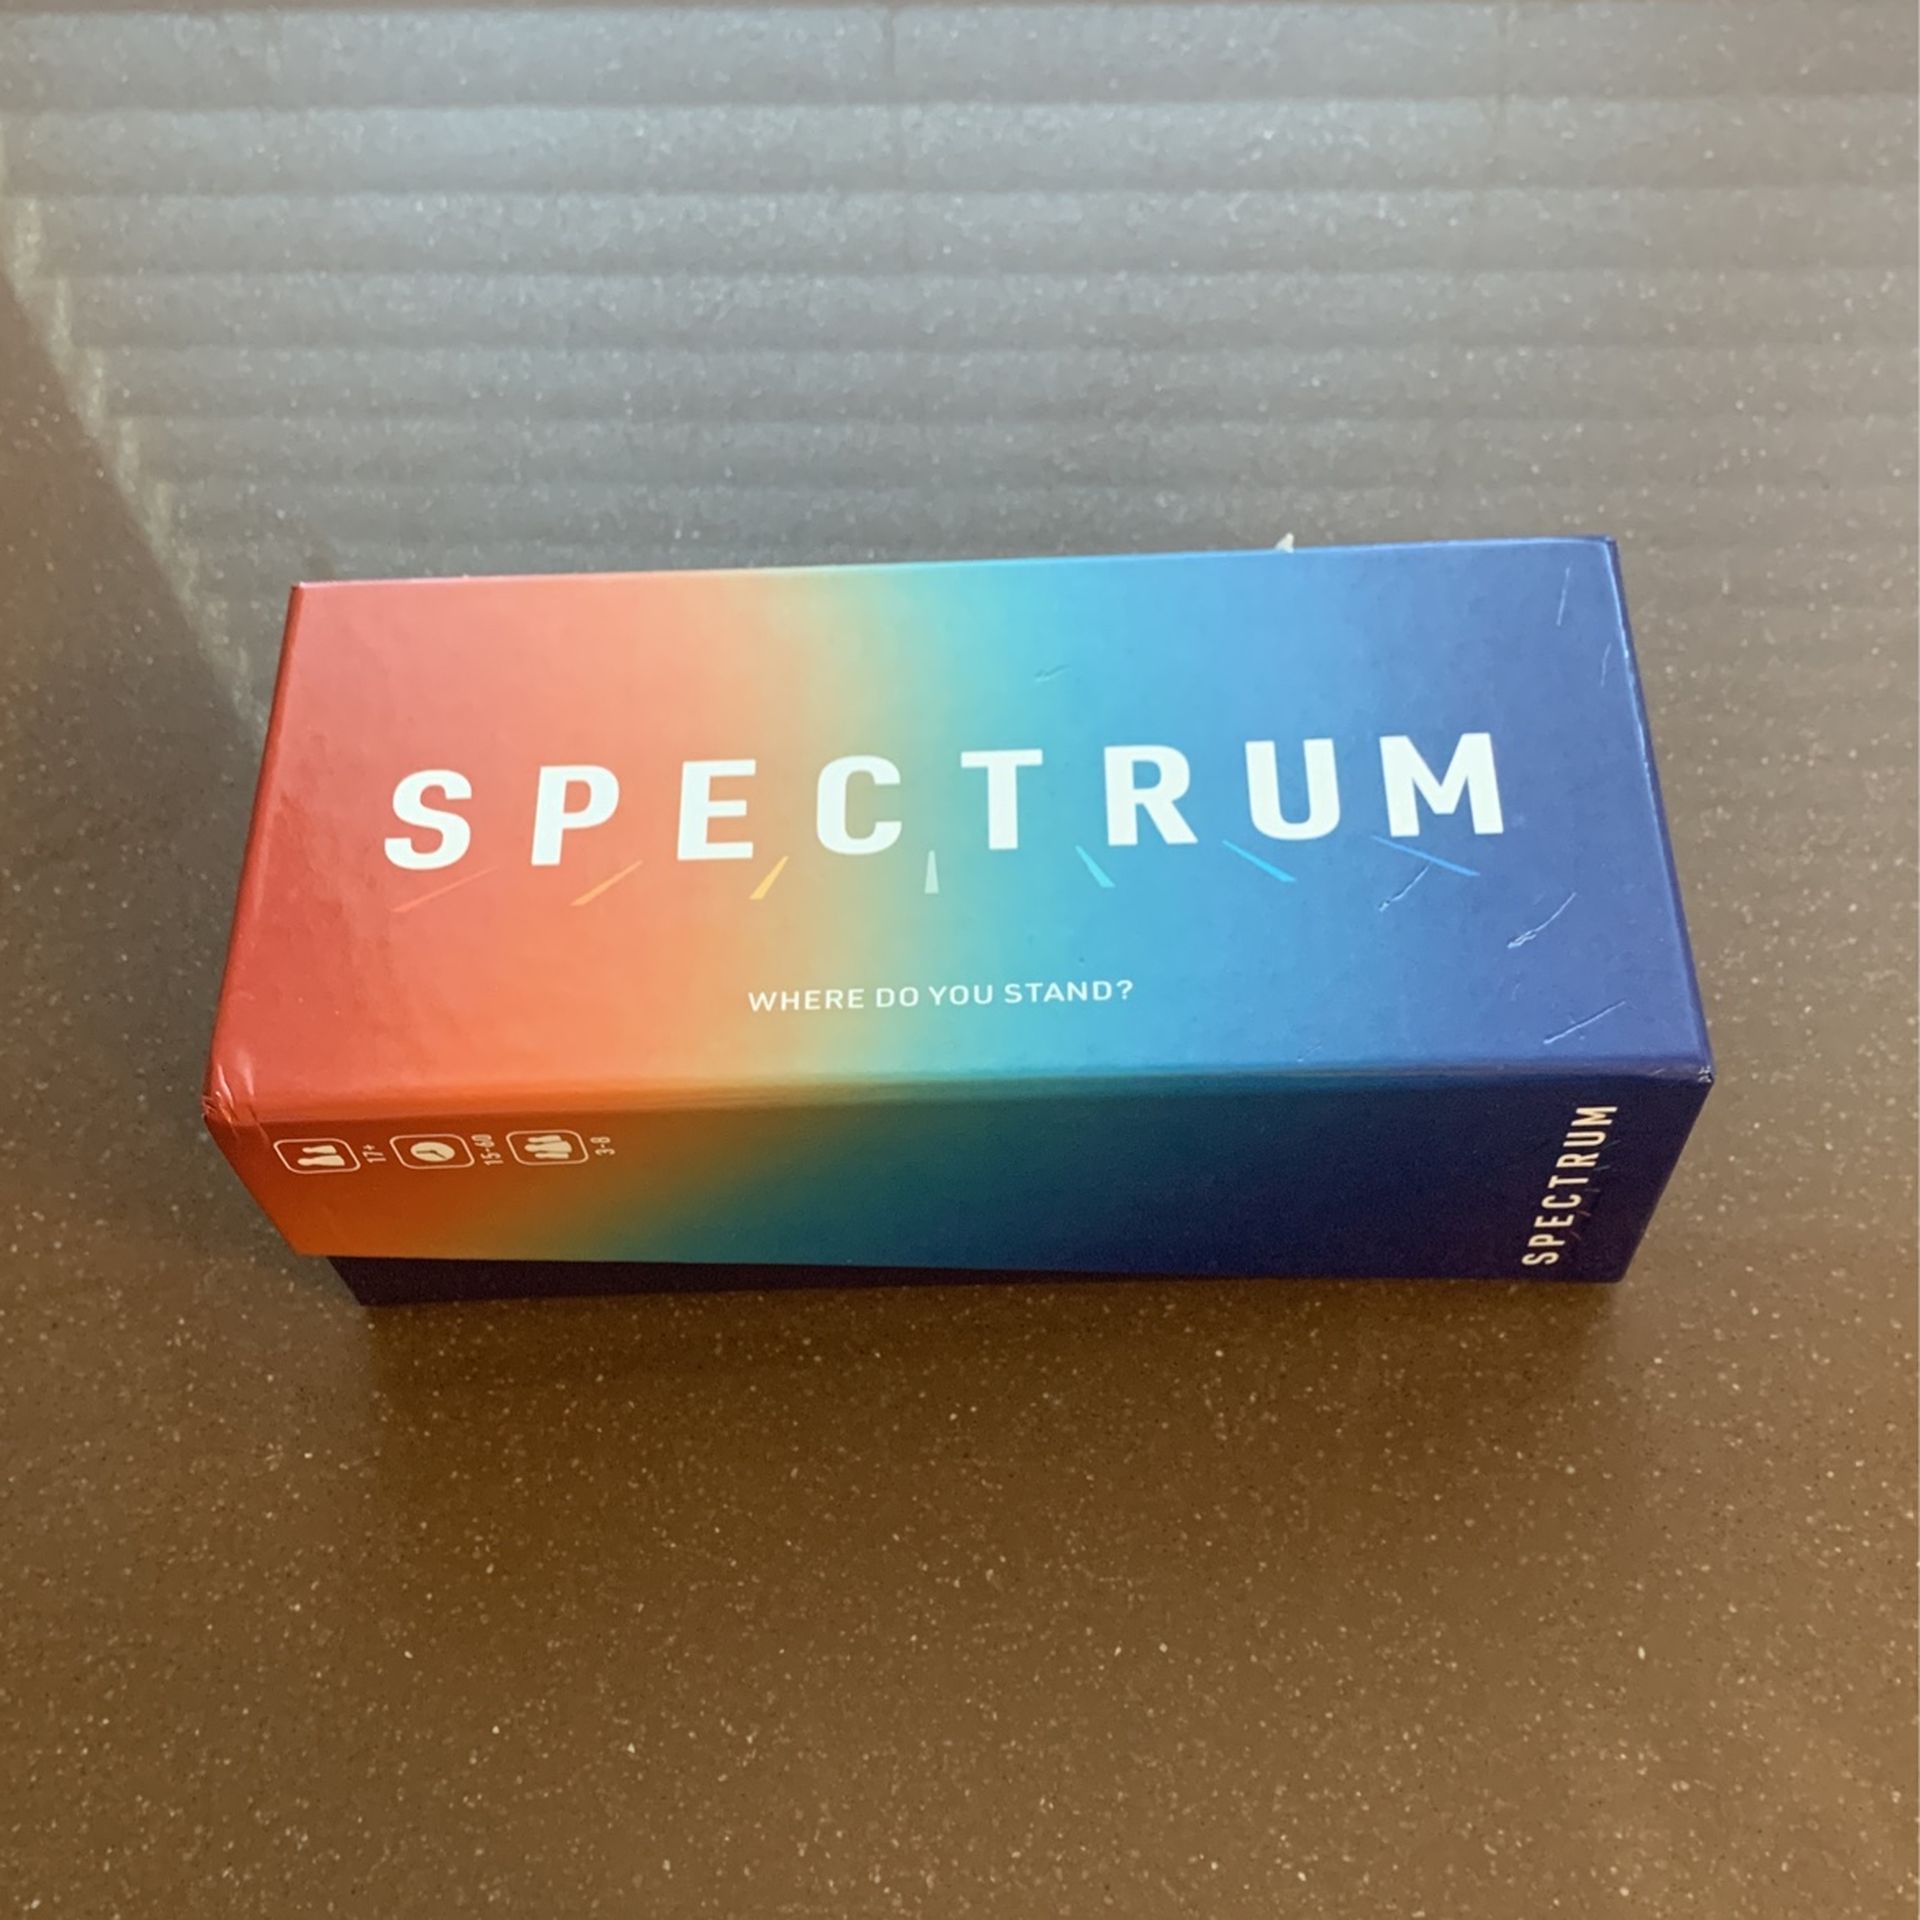 Spectrum Card/Board Game